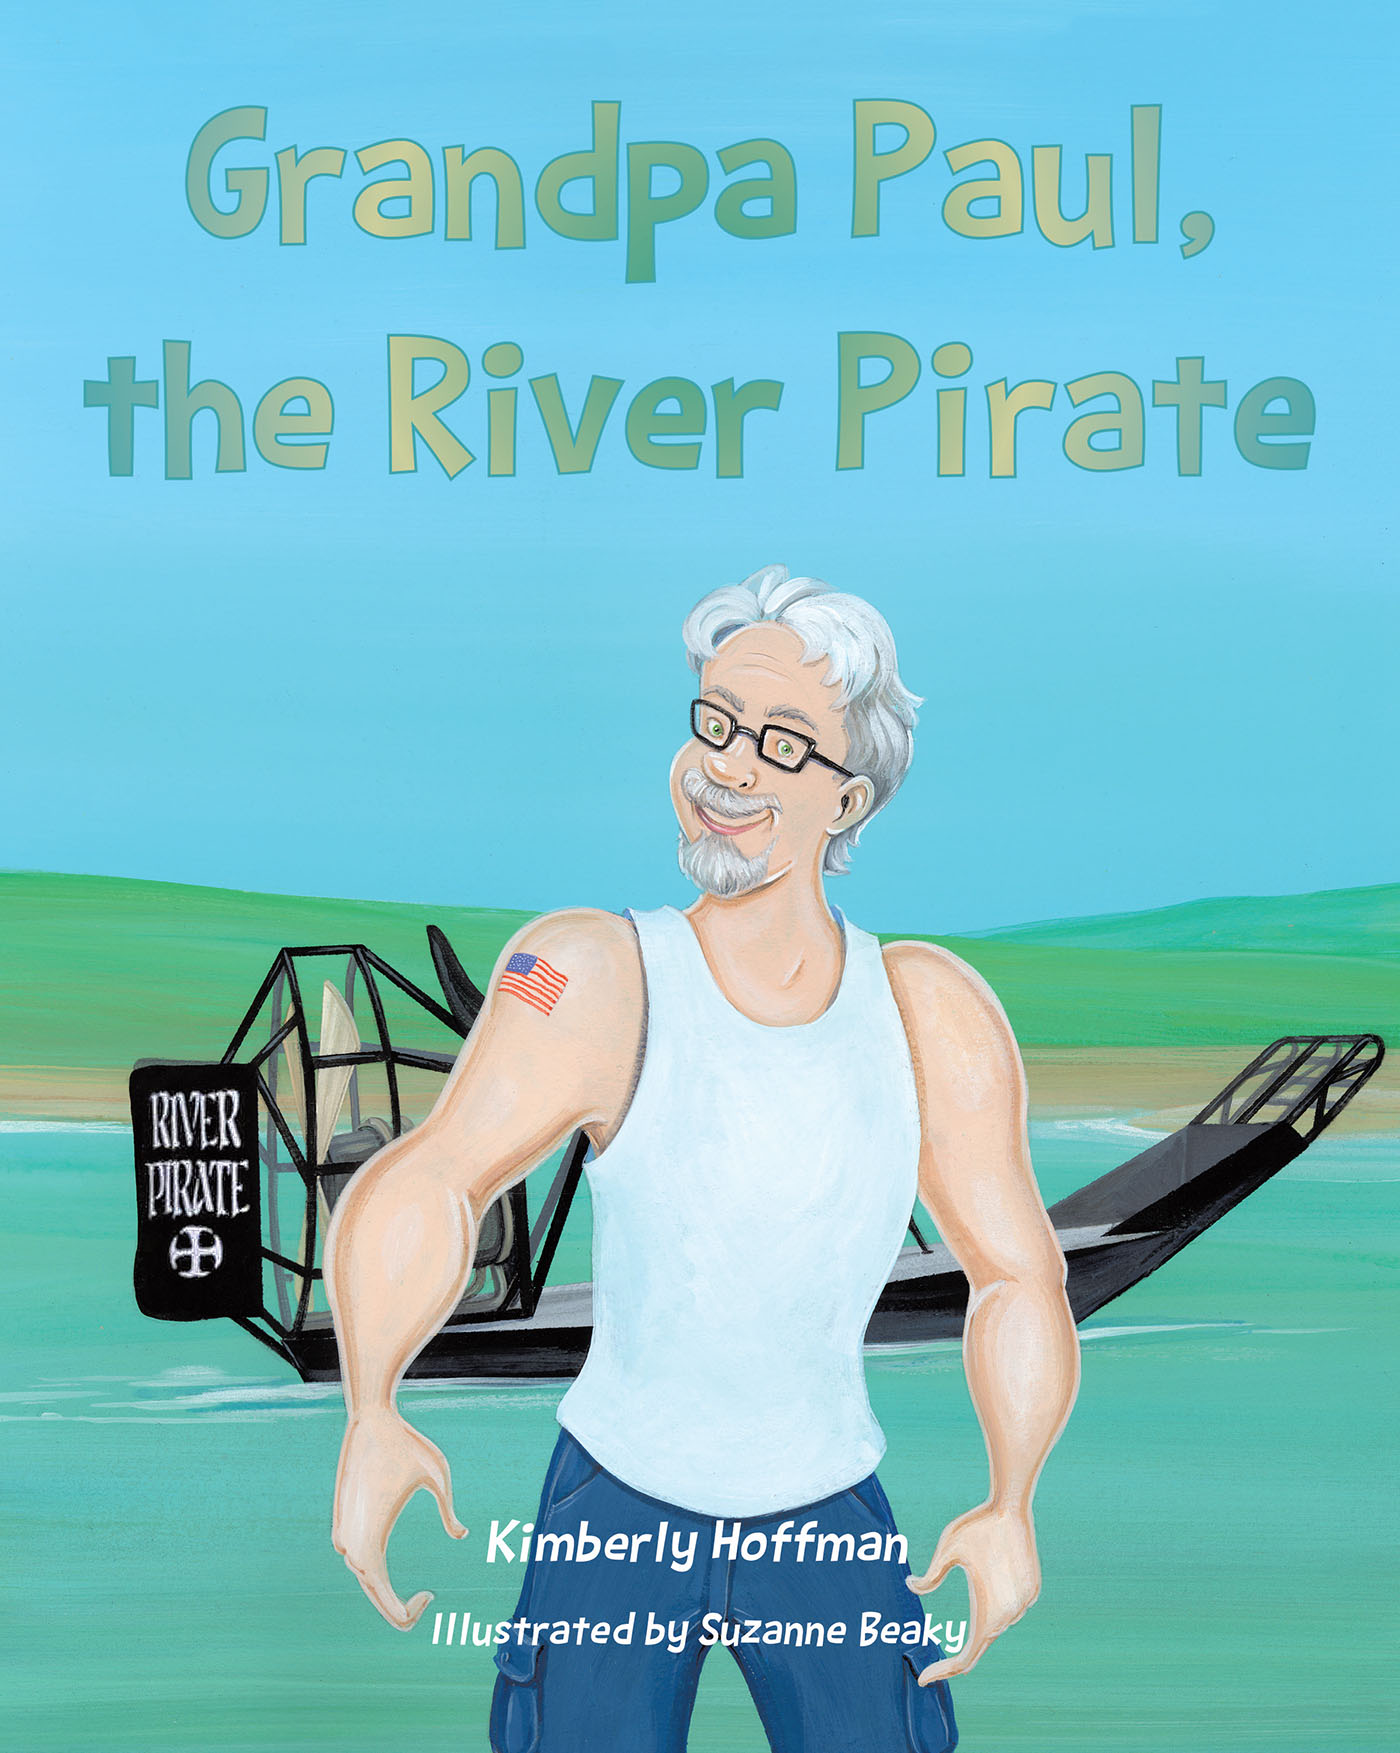 Grandpa Paul, the River Pirate Cover Image